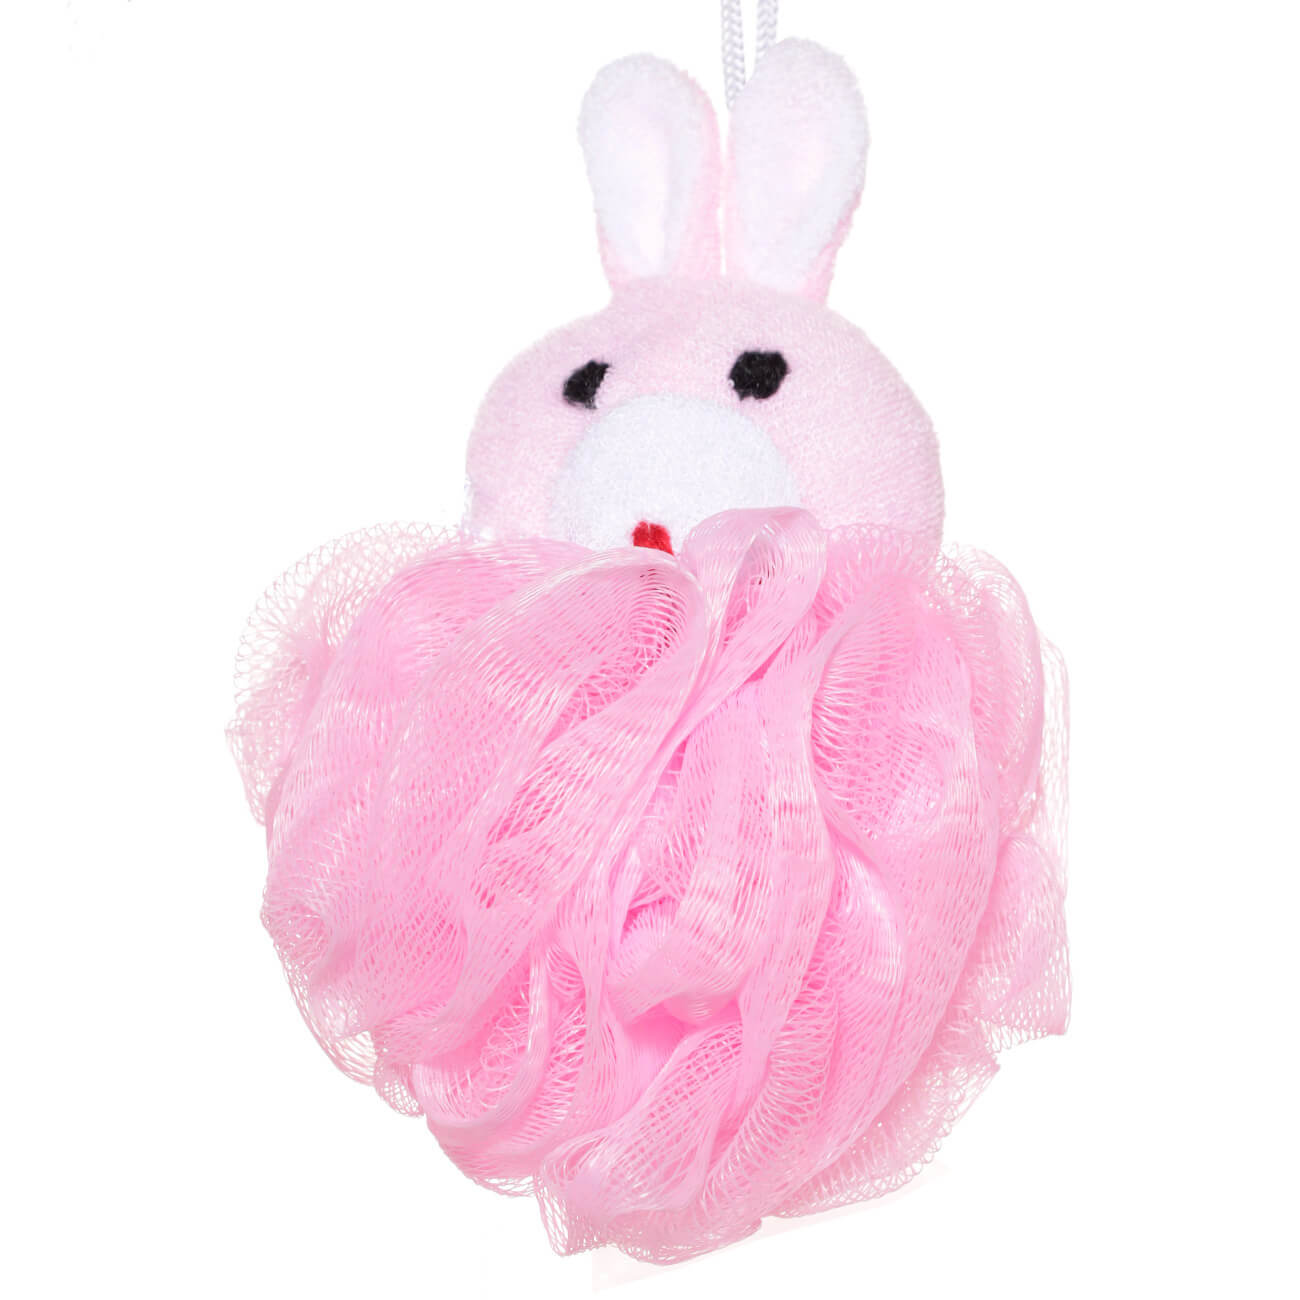 Мочалка для мытья тела, 12 см, детская, полиэтилен/полиэстер, розовая, Заяц, Rabbit